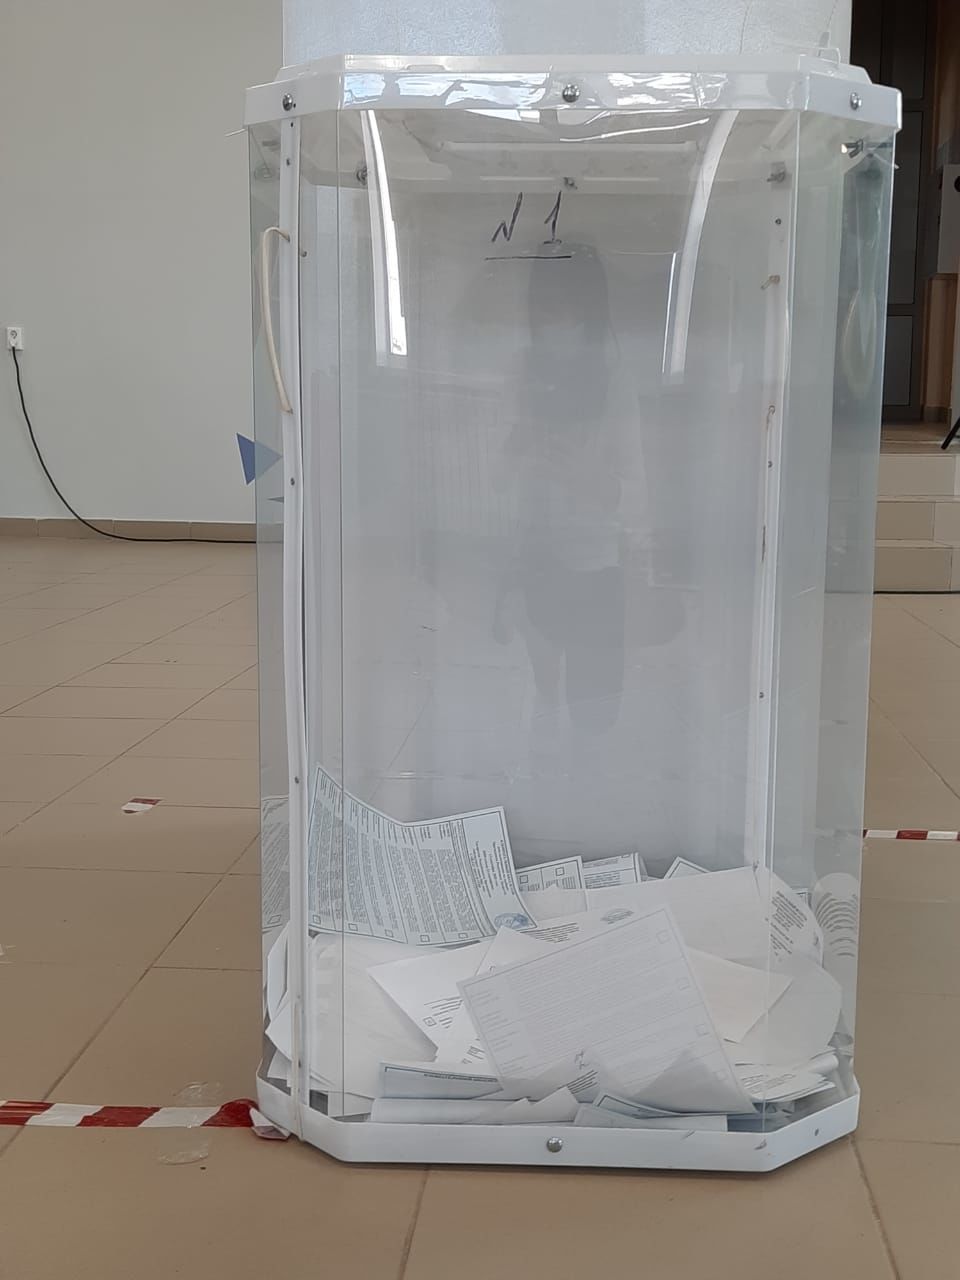 Как проходят выборы в Лениногорском районе